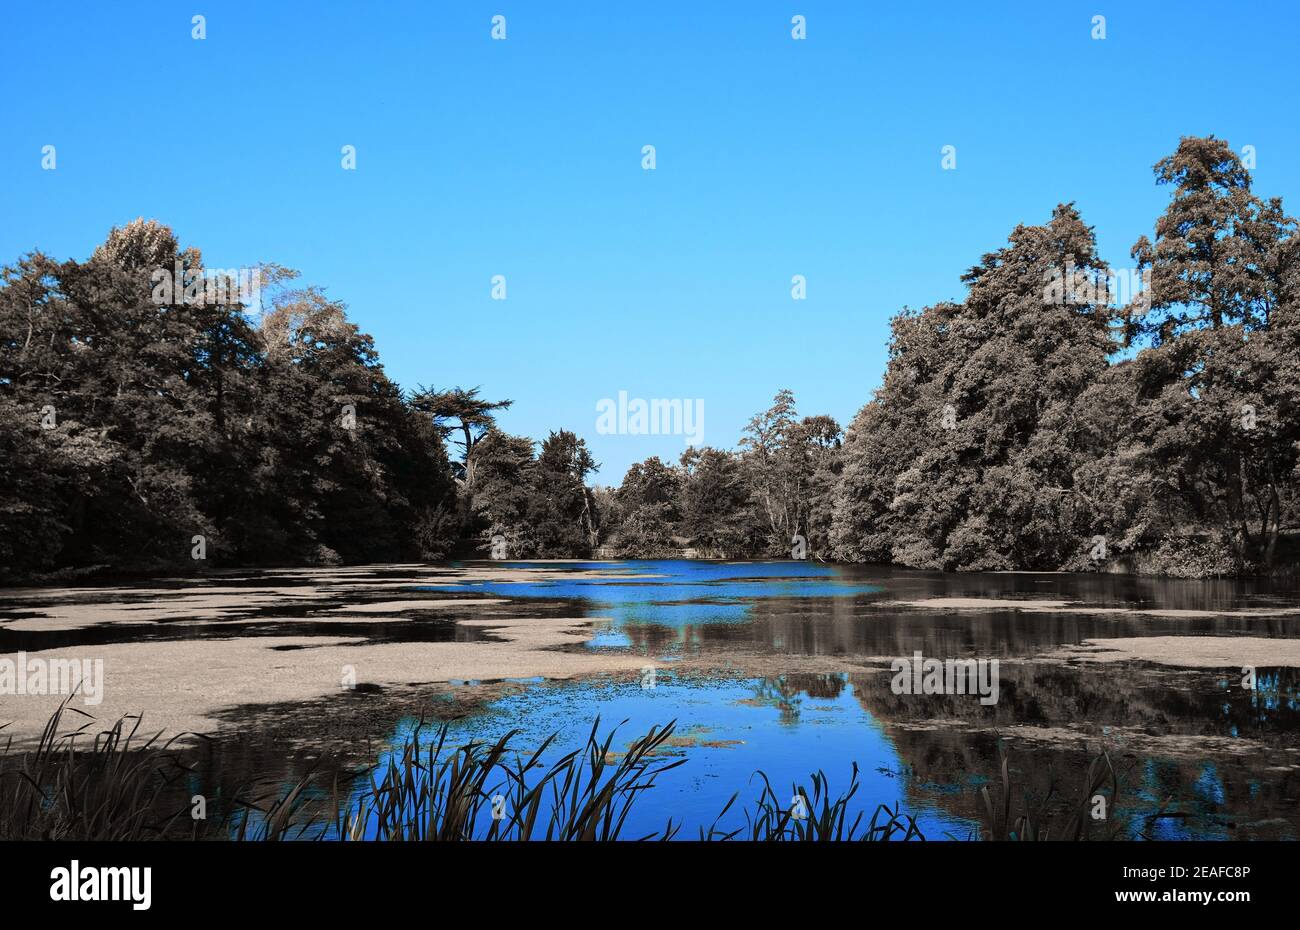 Paysage : petit lac anglais avec algues entourées d'arbres et de graminées utilisant un filtre bleu Banque D'Images